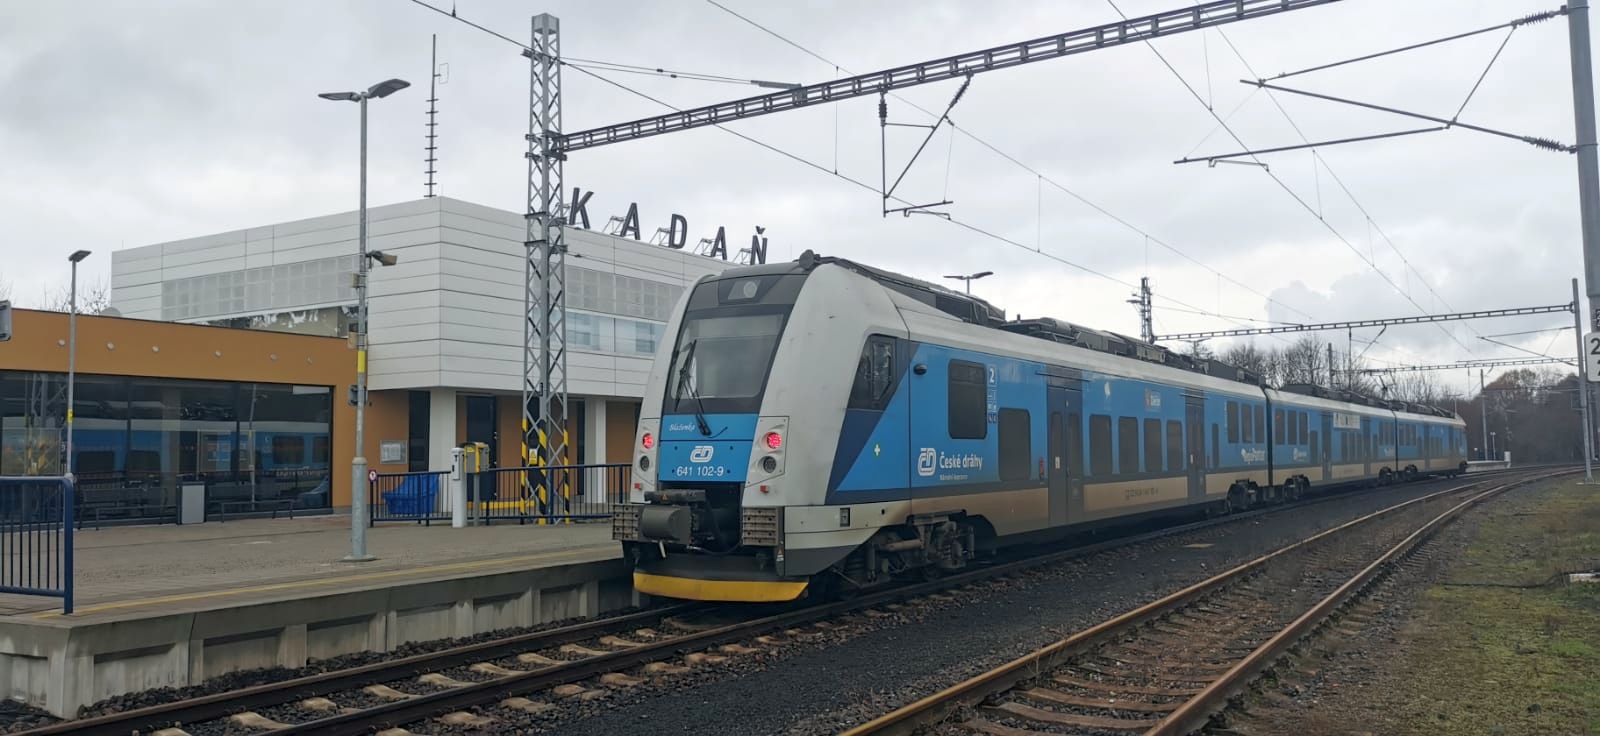 RegioPanter při zkušební jízdě 8. 12. 2022 ve stanici Kadaň